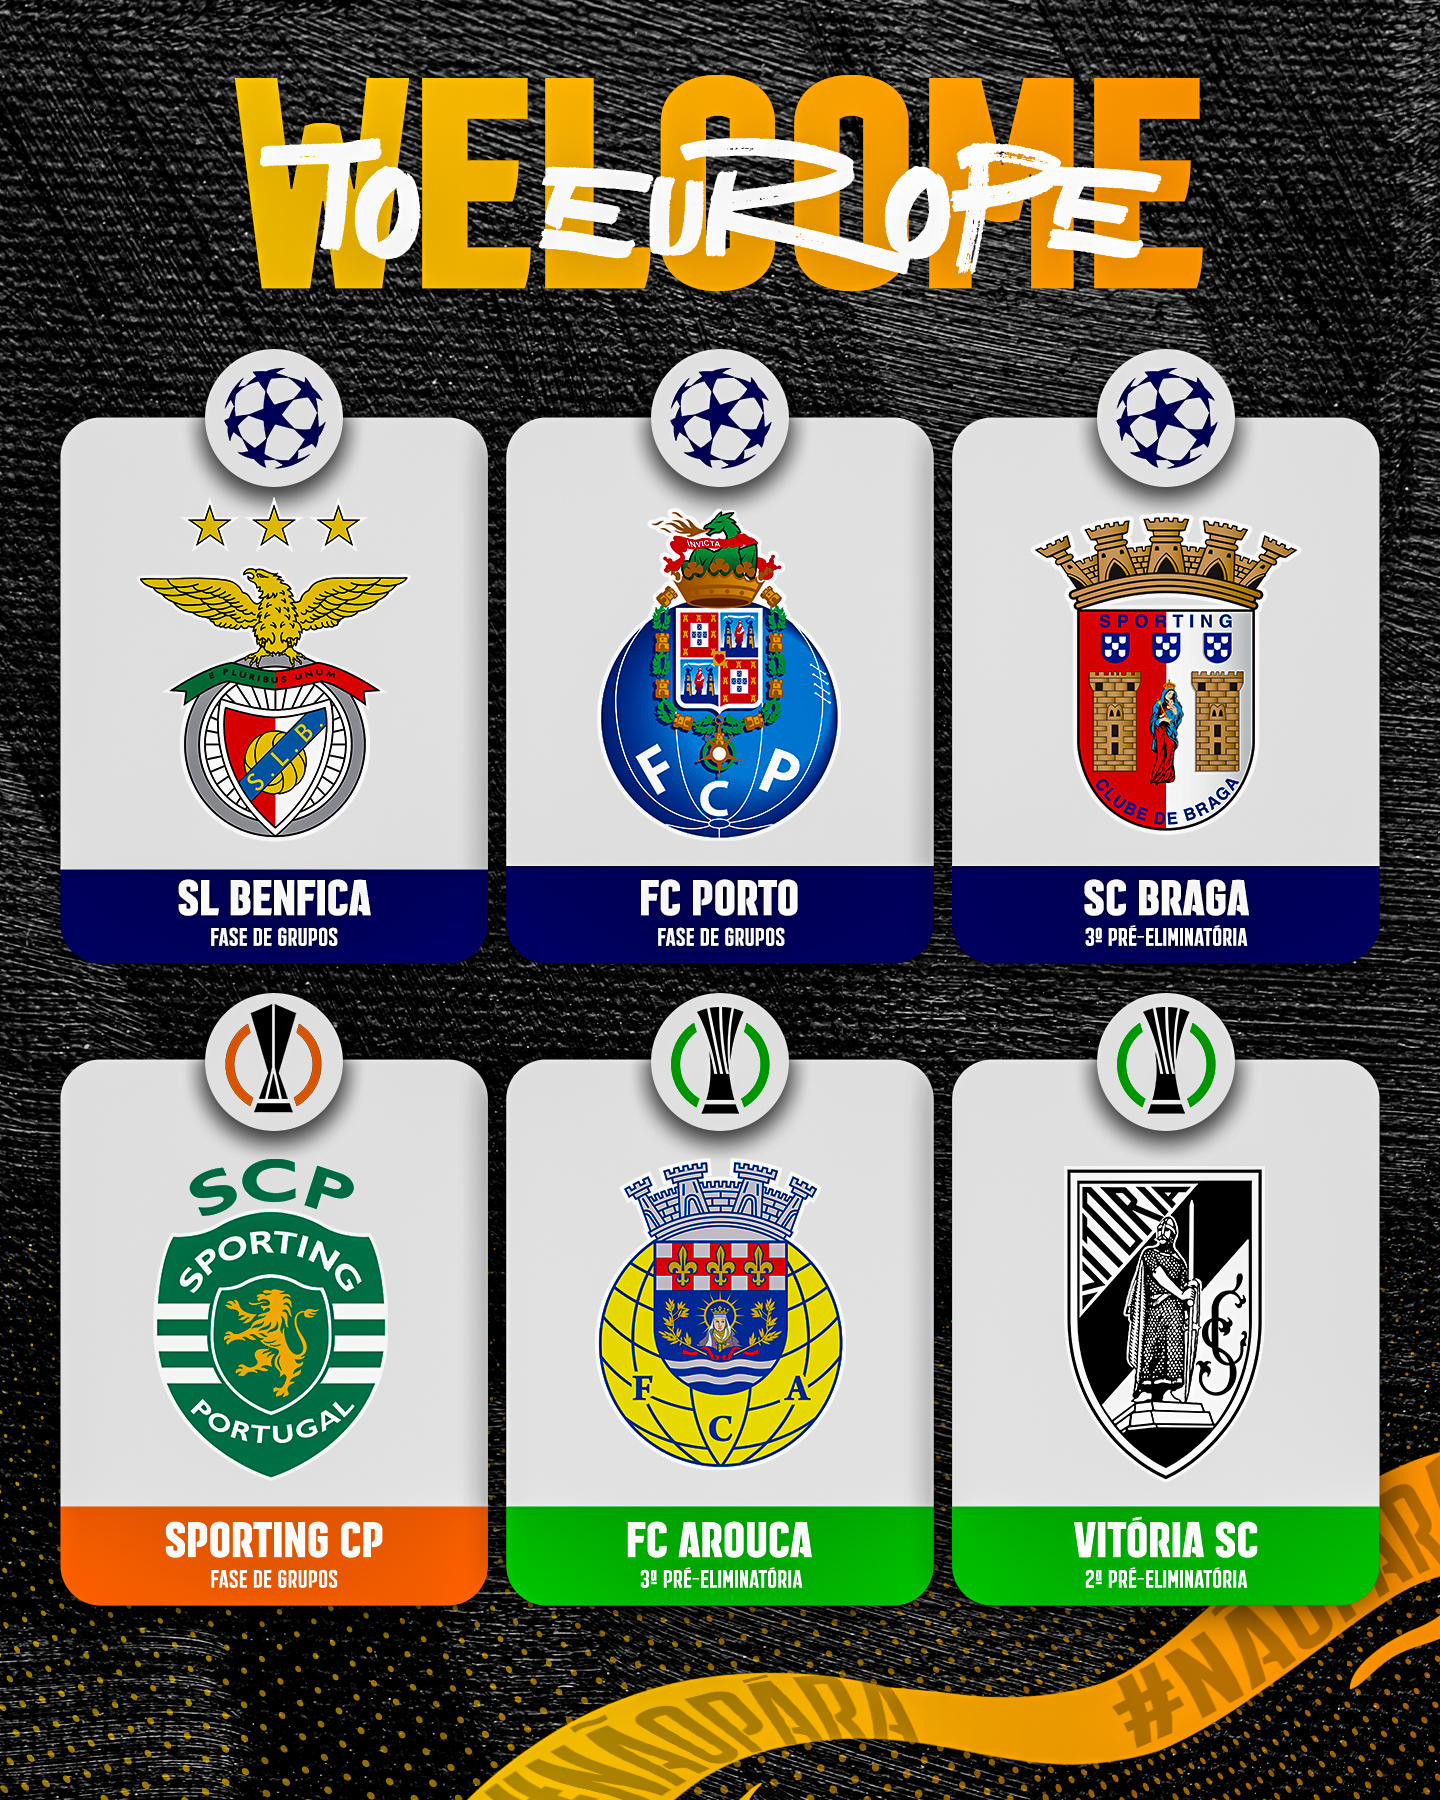 LIGA PORTUGAL 23/24: Times, Estadios, Regulamento, Mudança no Nº vagas da  Champions e mais 